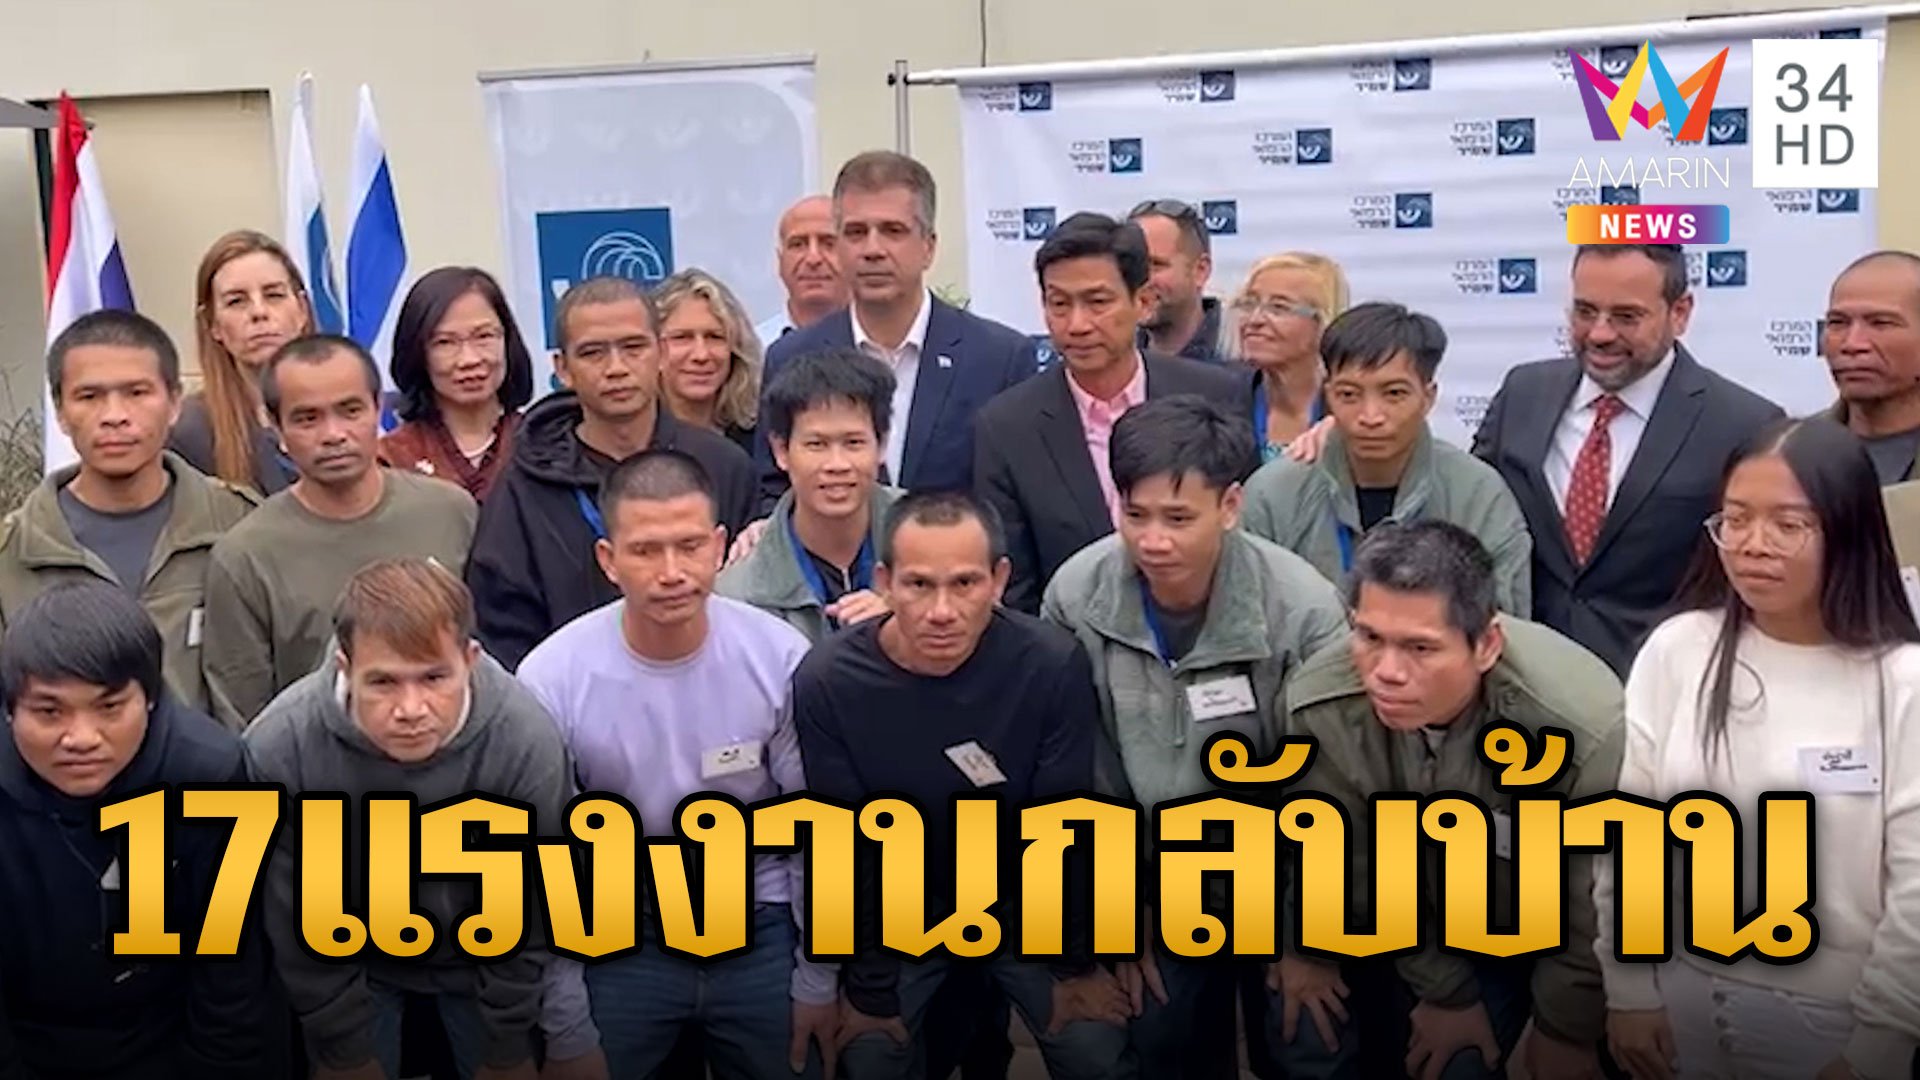 17 ตัวประกันคนไทยเตรียมกลับบ้าน "ปานปรีย์" ปลาบปลื้มดีใจจนพูดไม่ออก | ข่าวเที่ยงอมรินทร์ | 29 พ.ย. 66 | AMARIN TVHD34